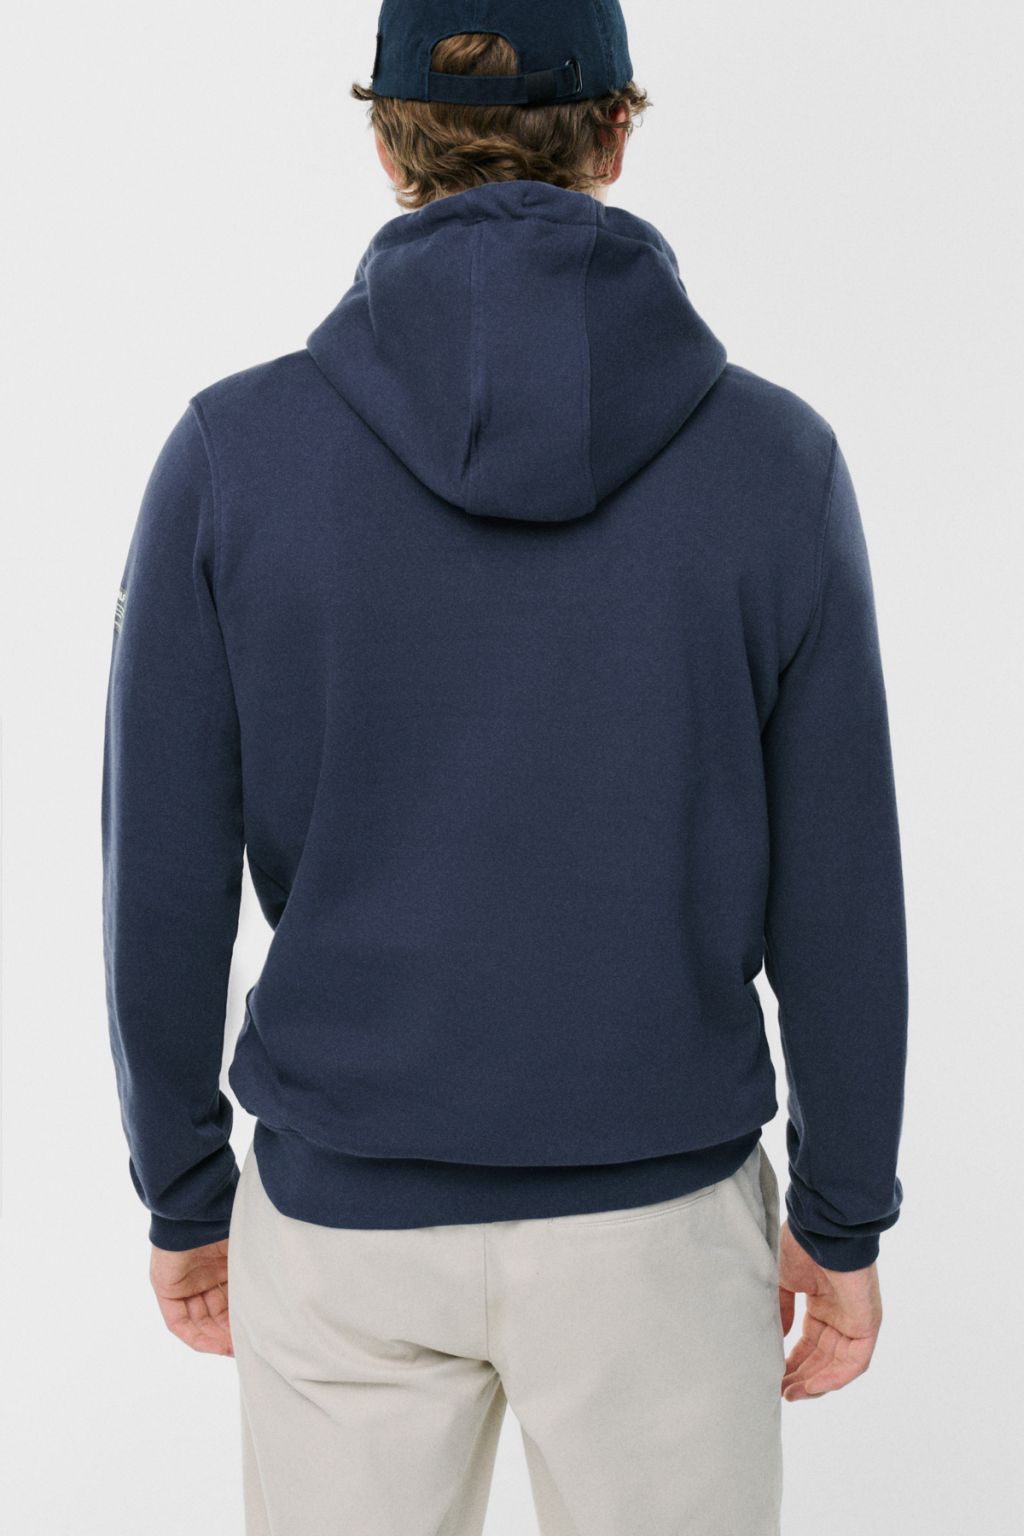 Lutaalf Hoodie-Sweatshirt Man Deep Navy L